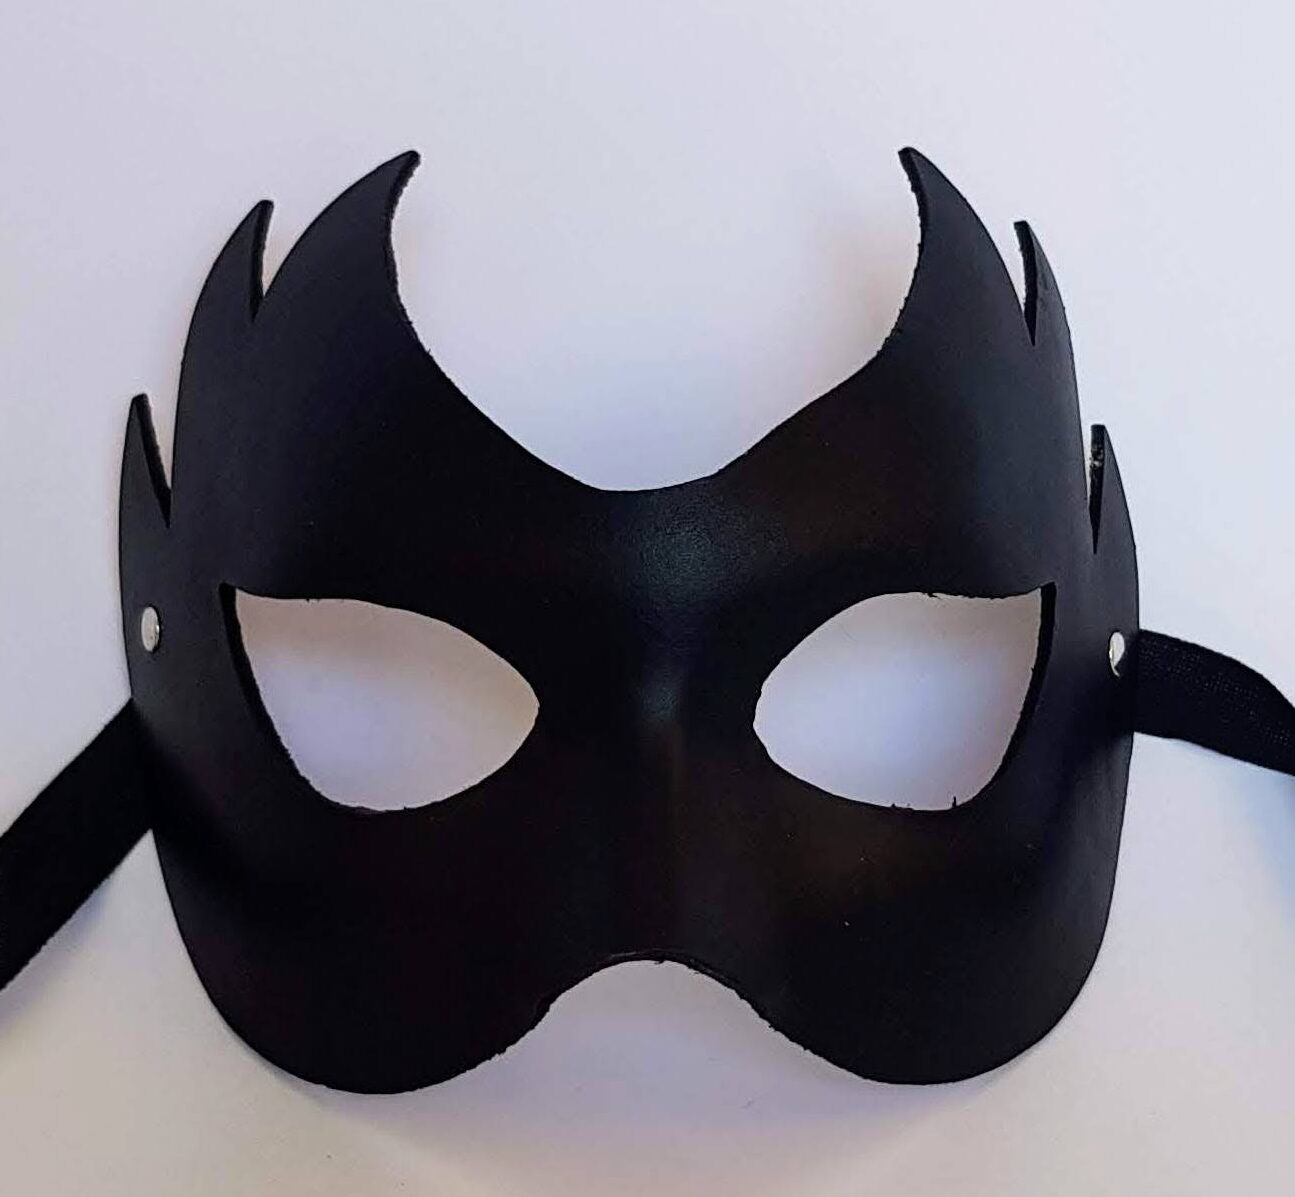 La máscara de cuero del buscador